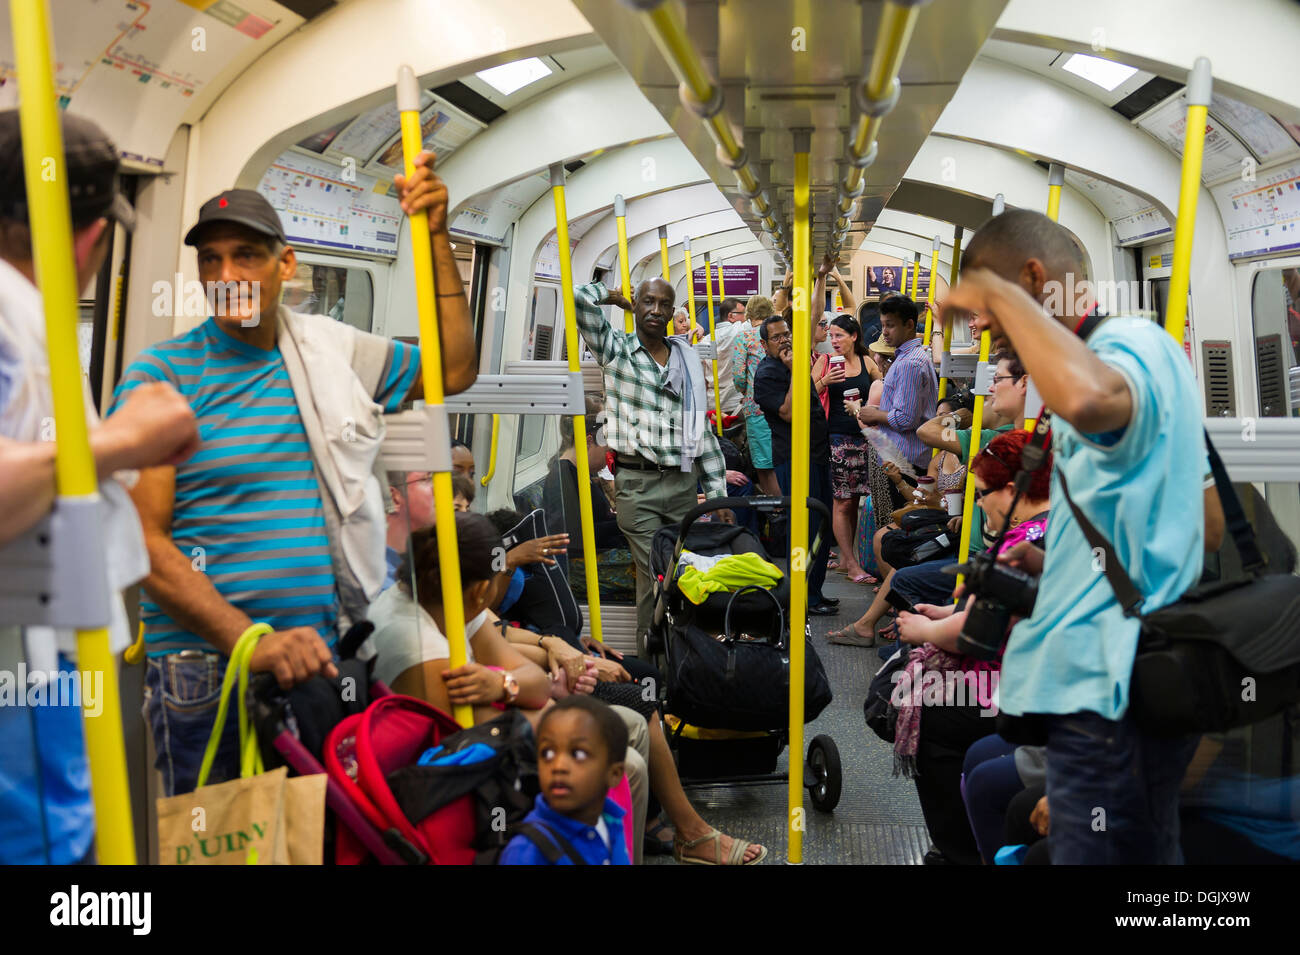 Passagers dans un tube chaud train à Londres. Banque D'Images